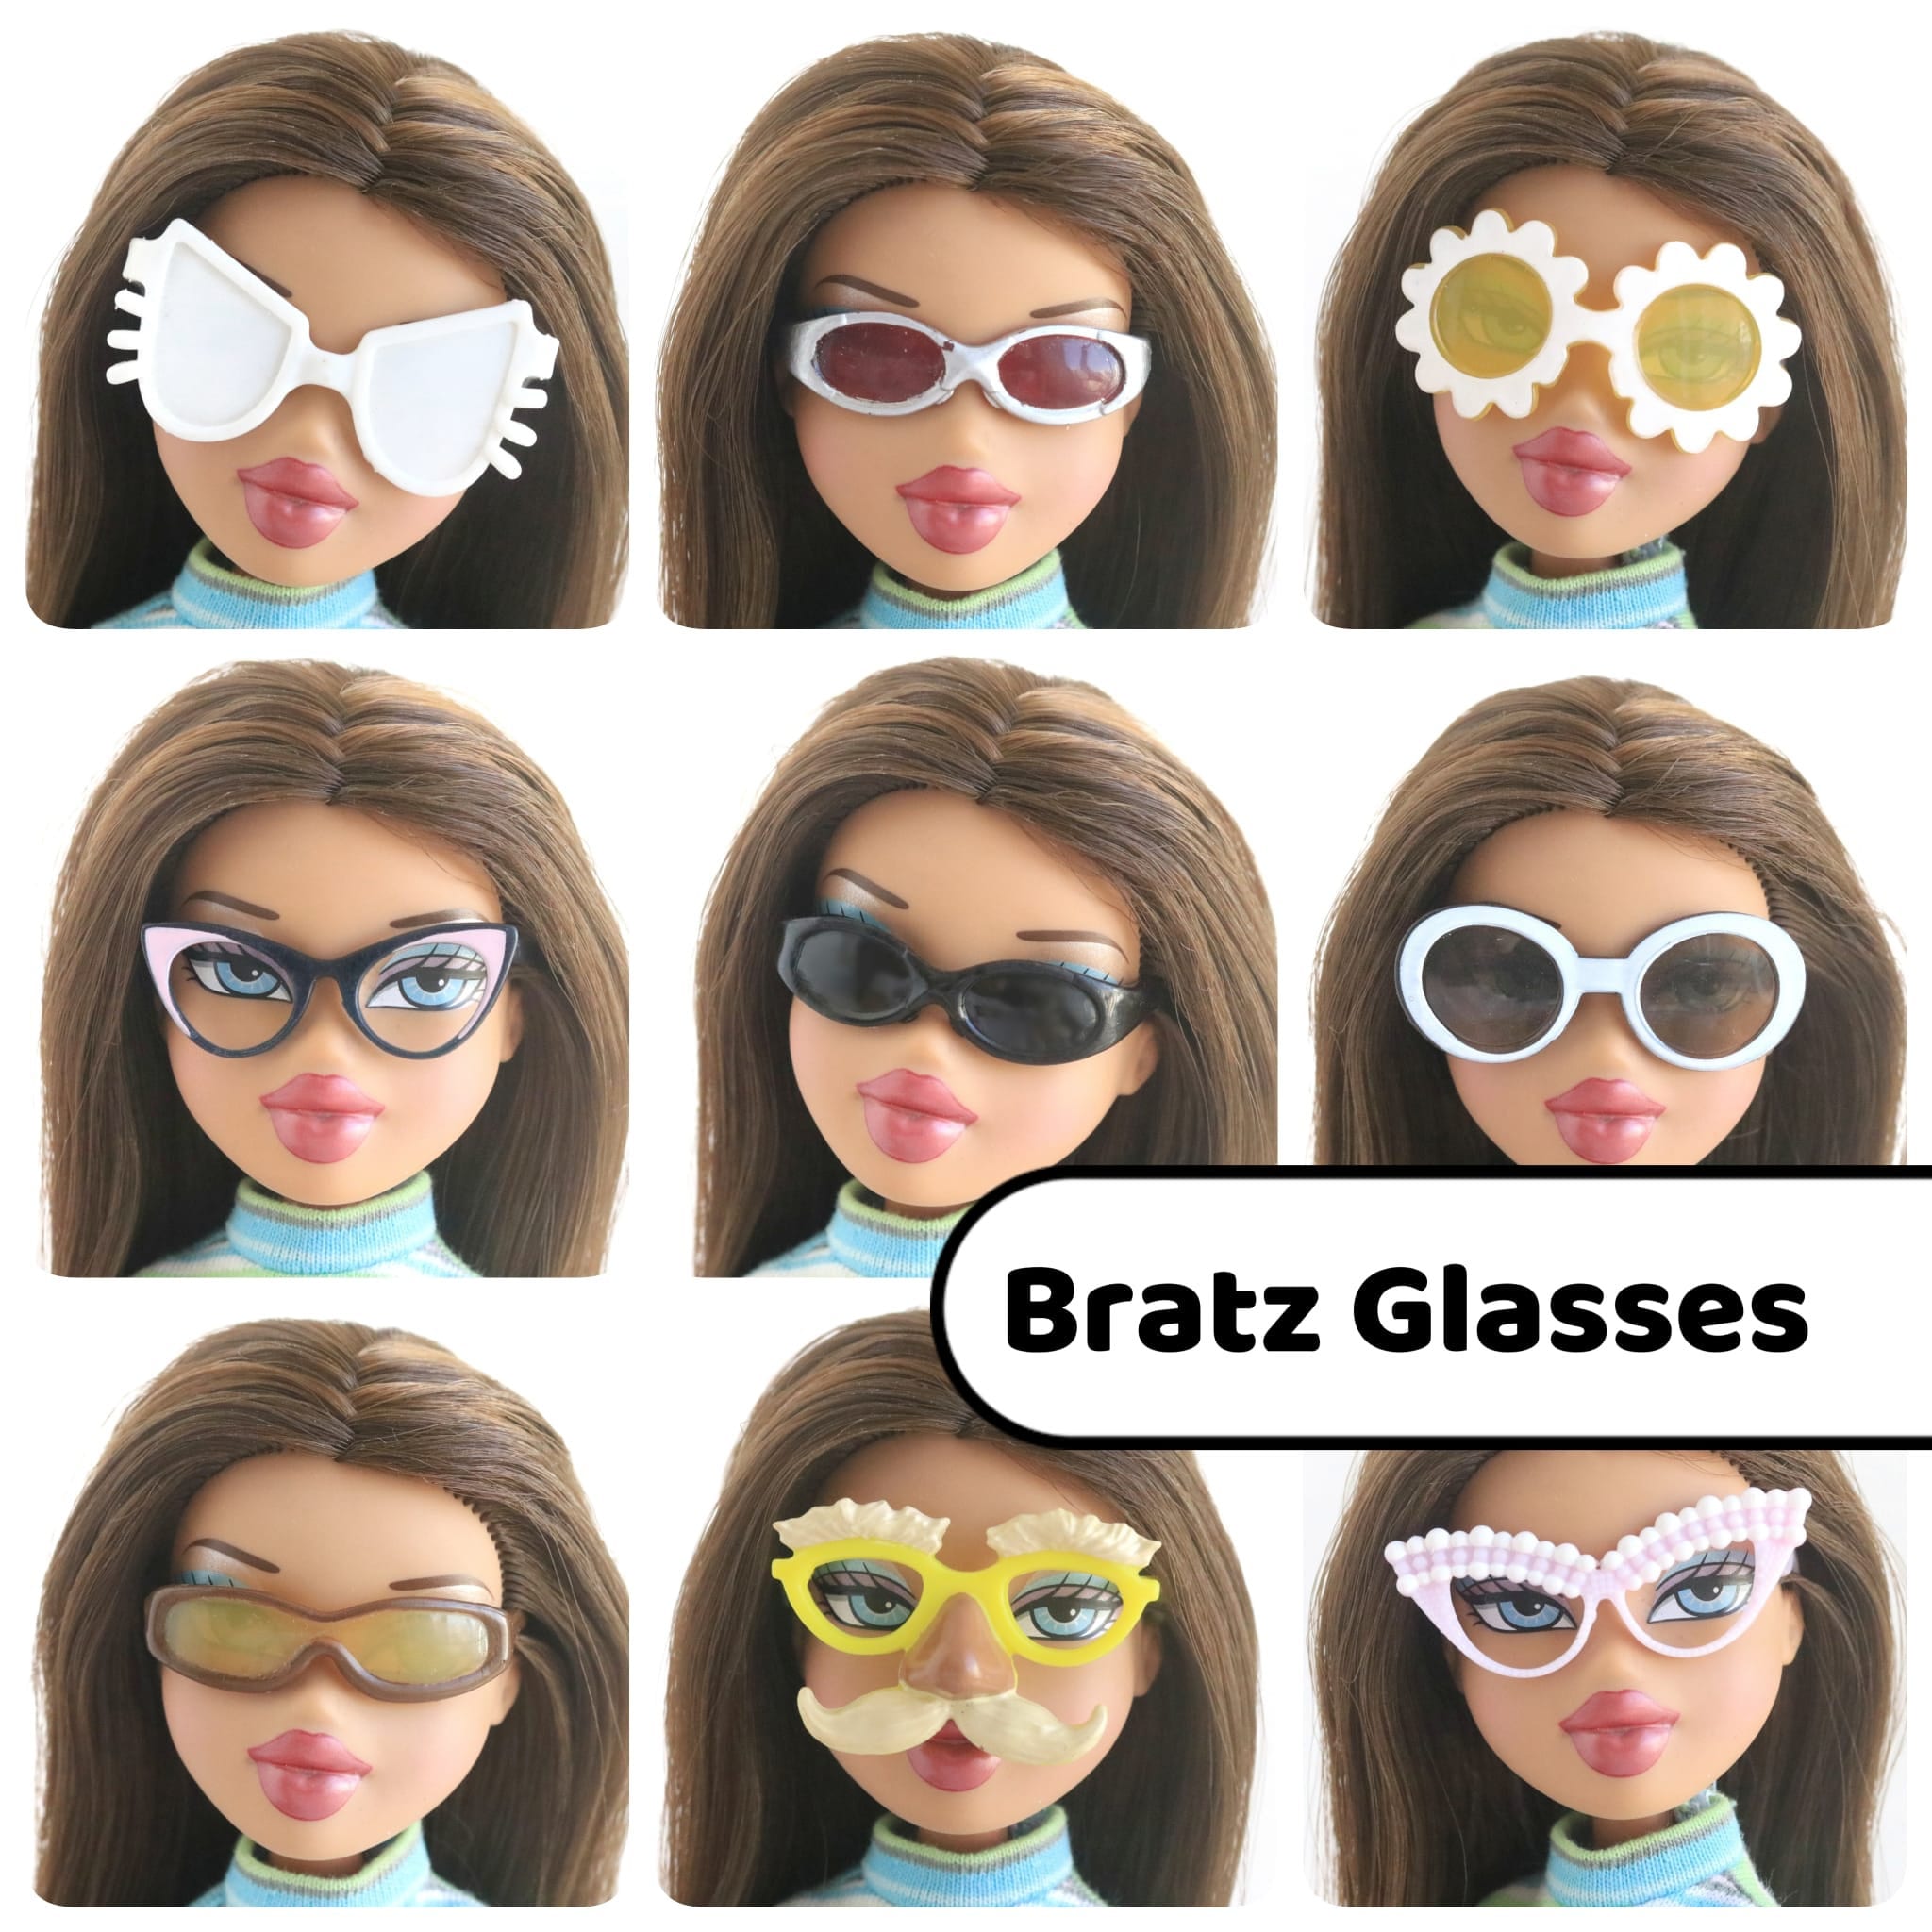 Sunglasses in 5 Styles - Kmart, Monster High, Sindy, Bratz Doll Accessories  | Wild Blue Dolls